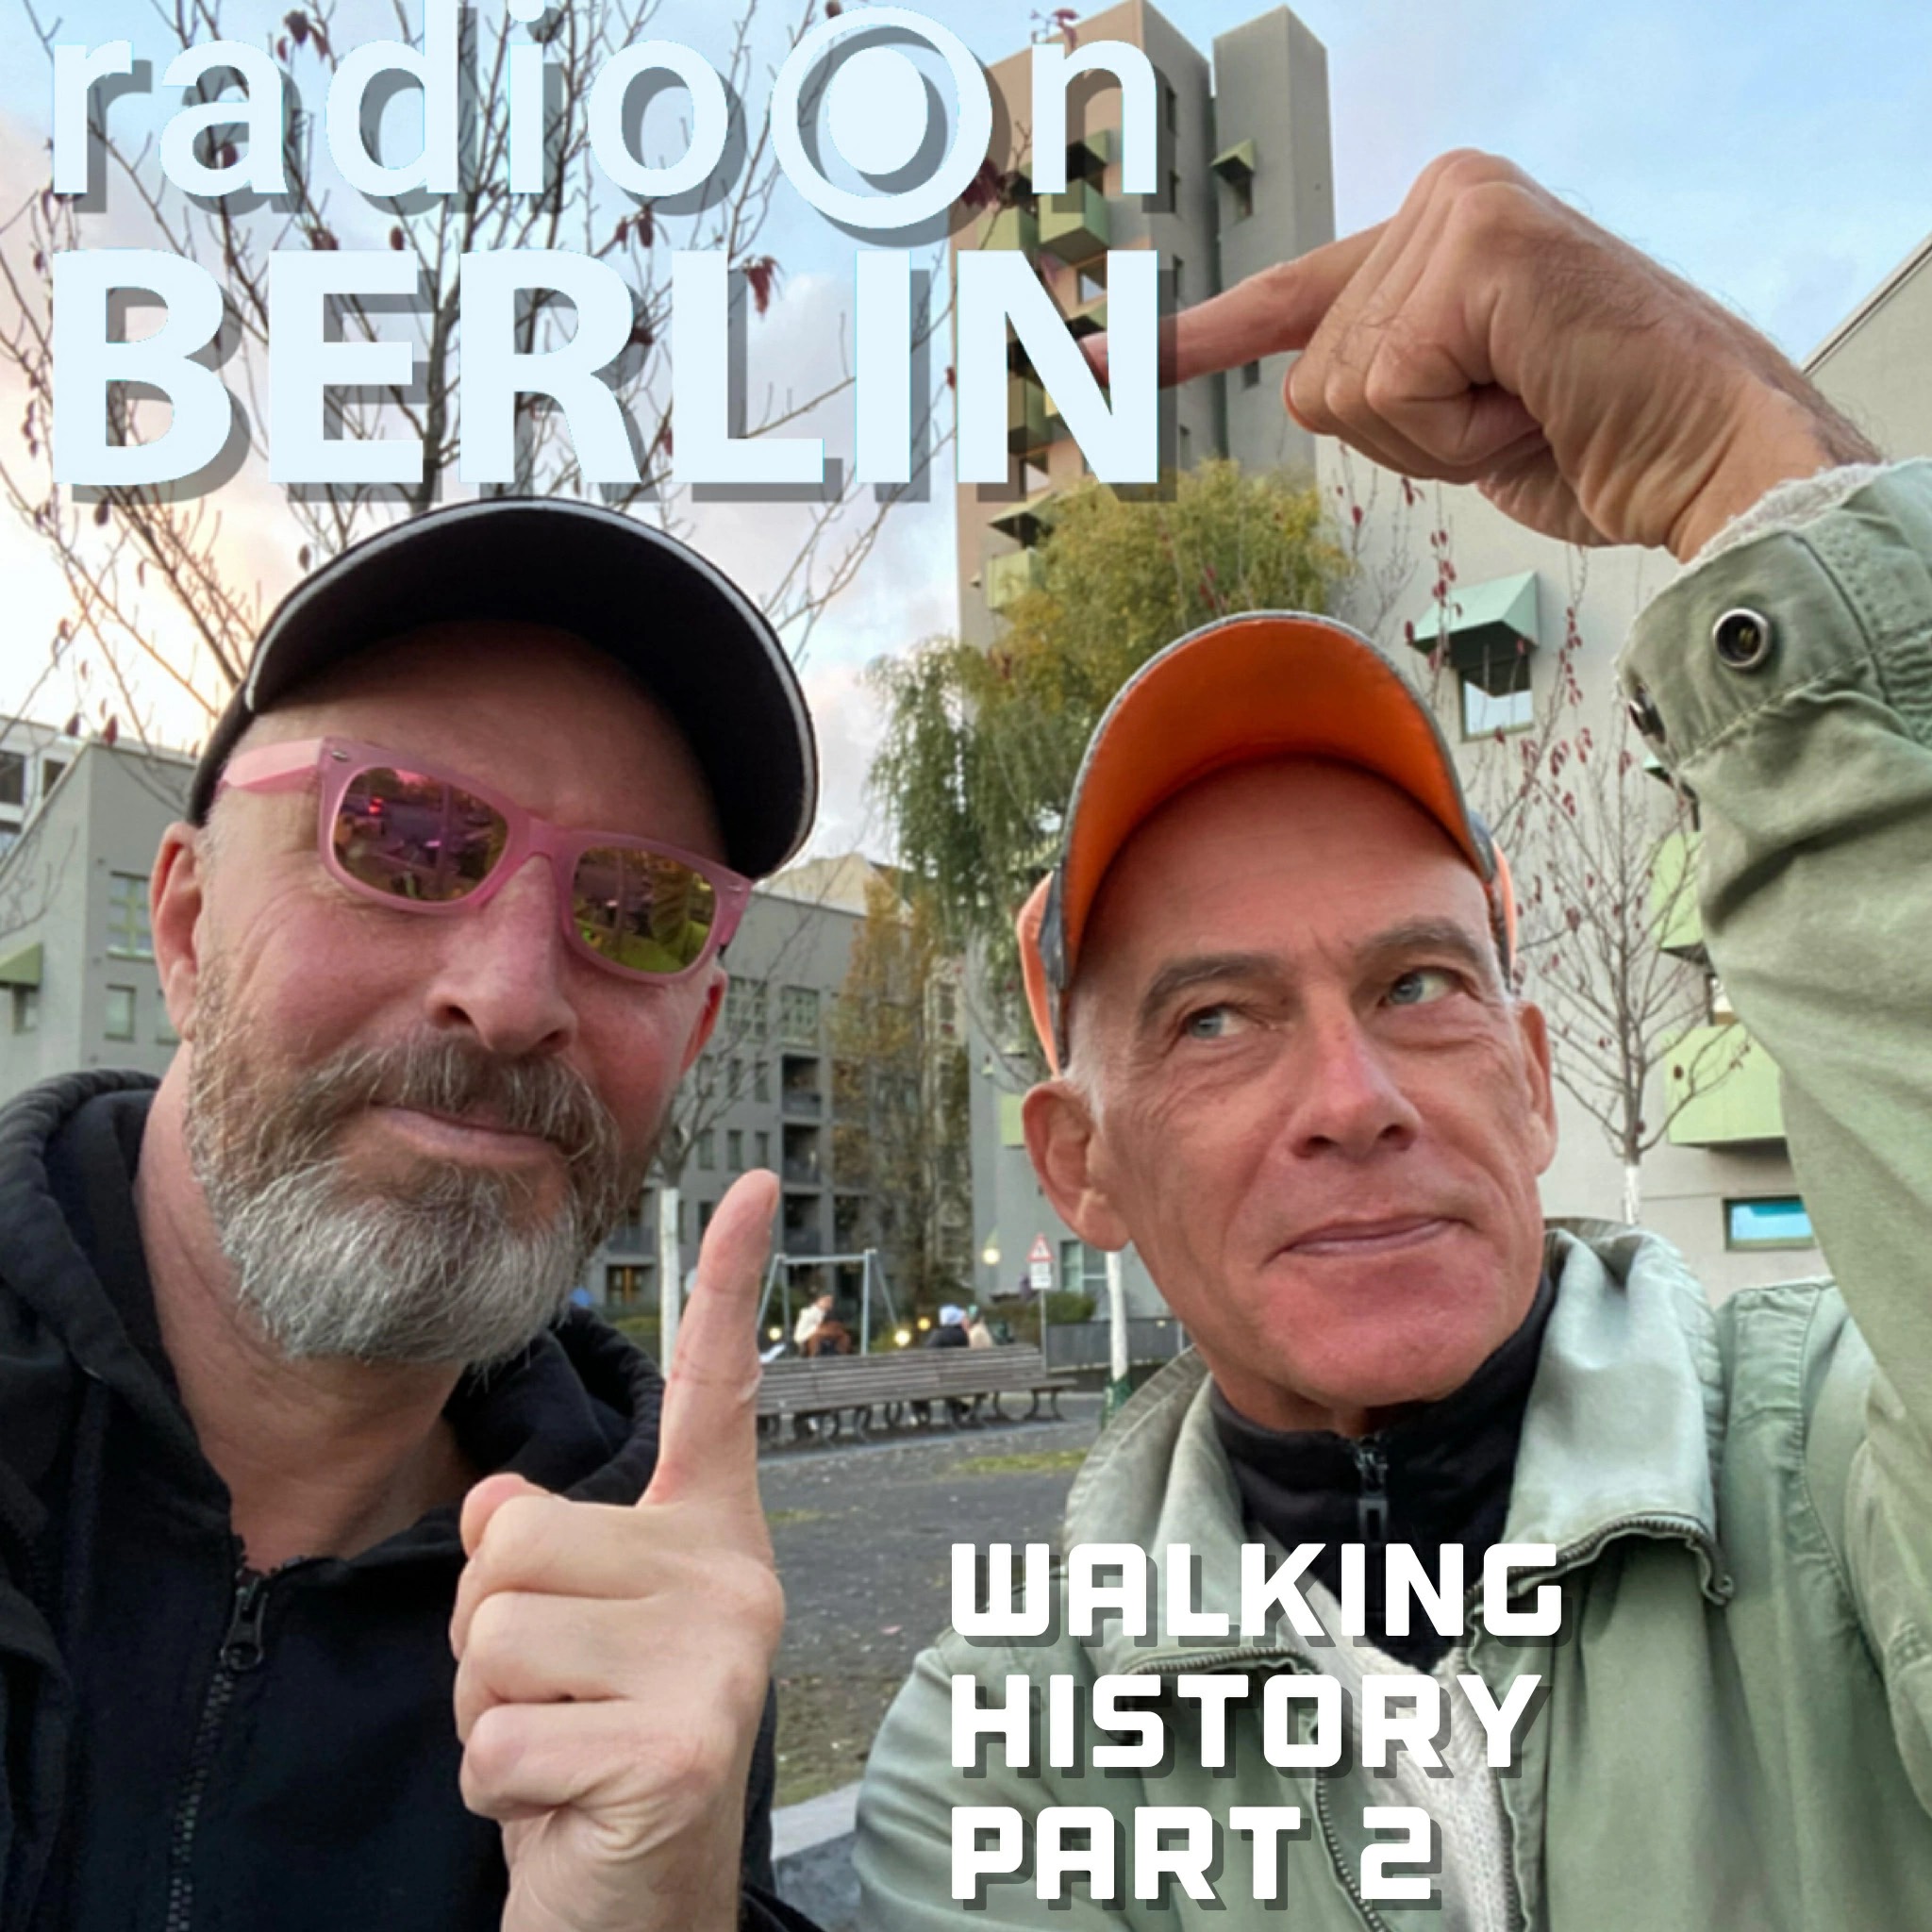 Shephard & van Alebeek – walking history, part 2